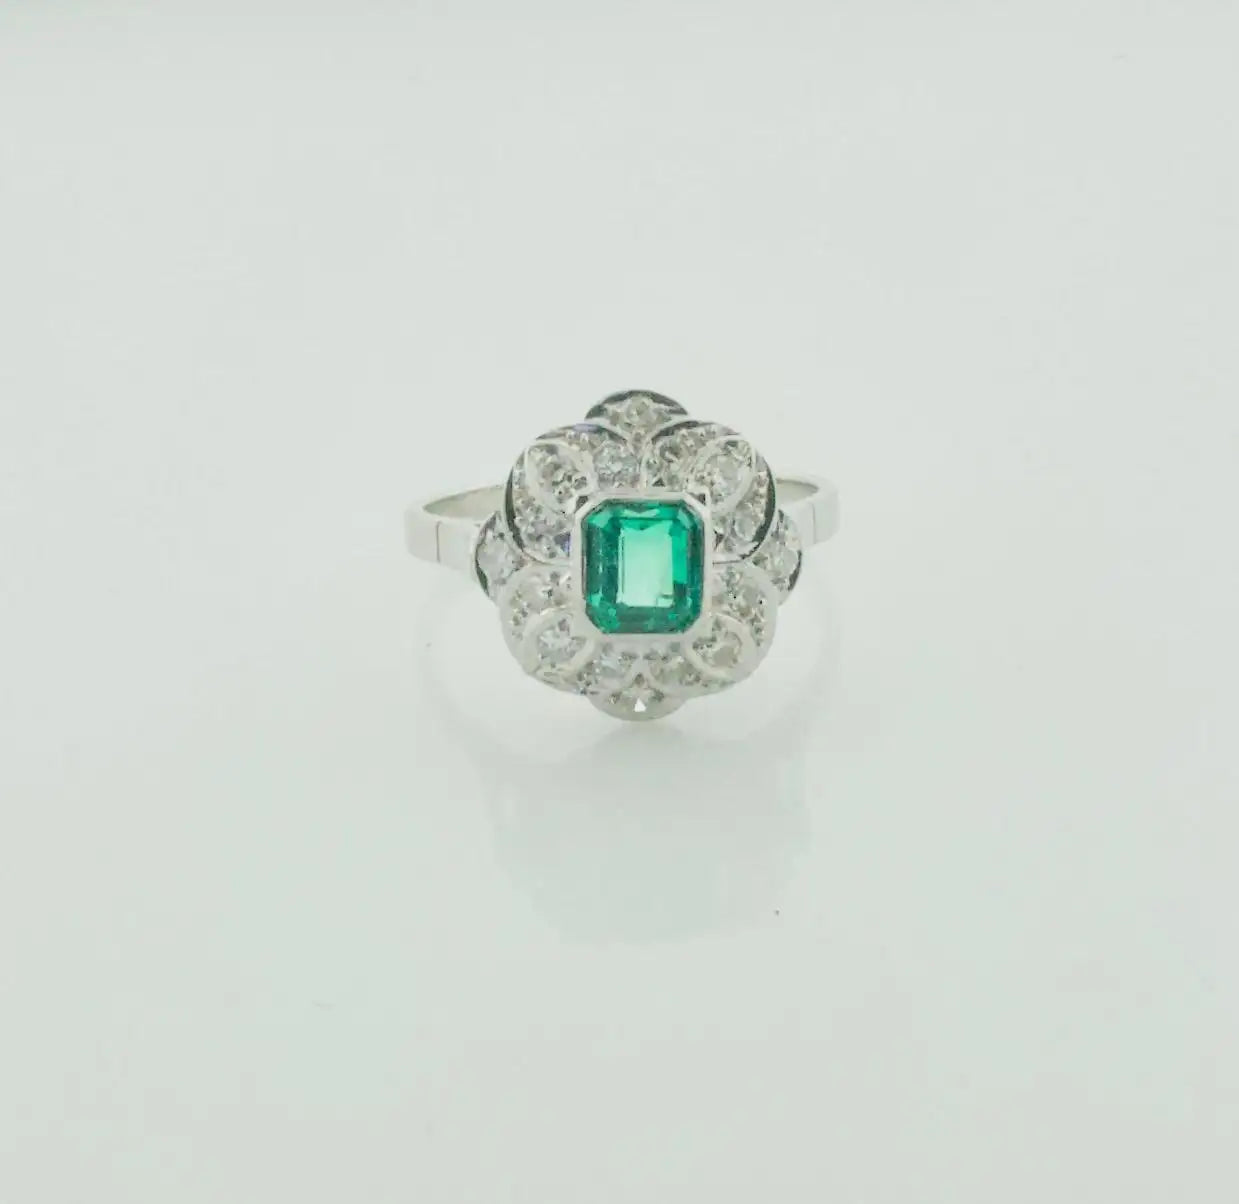 Art Deco Emerald and Diamond Ring in Platinum